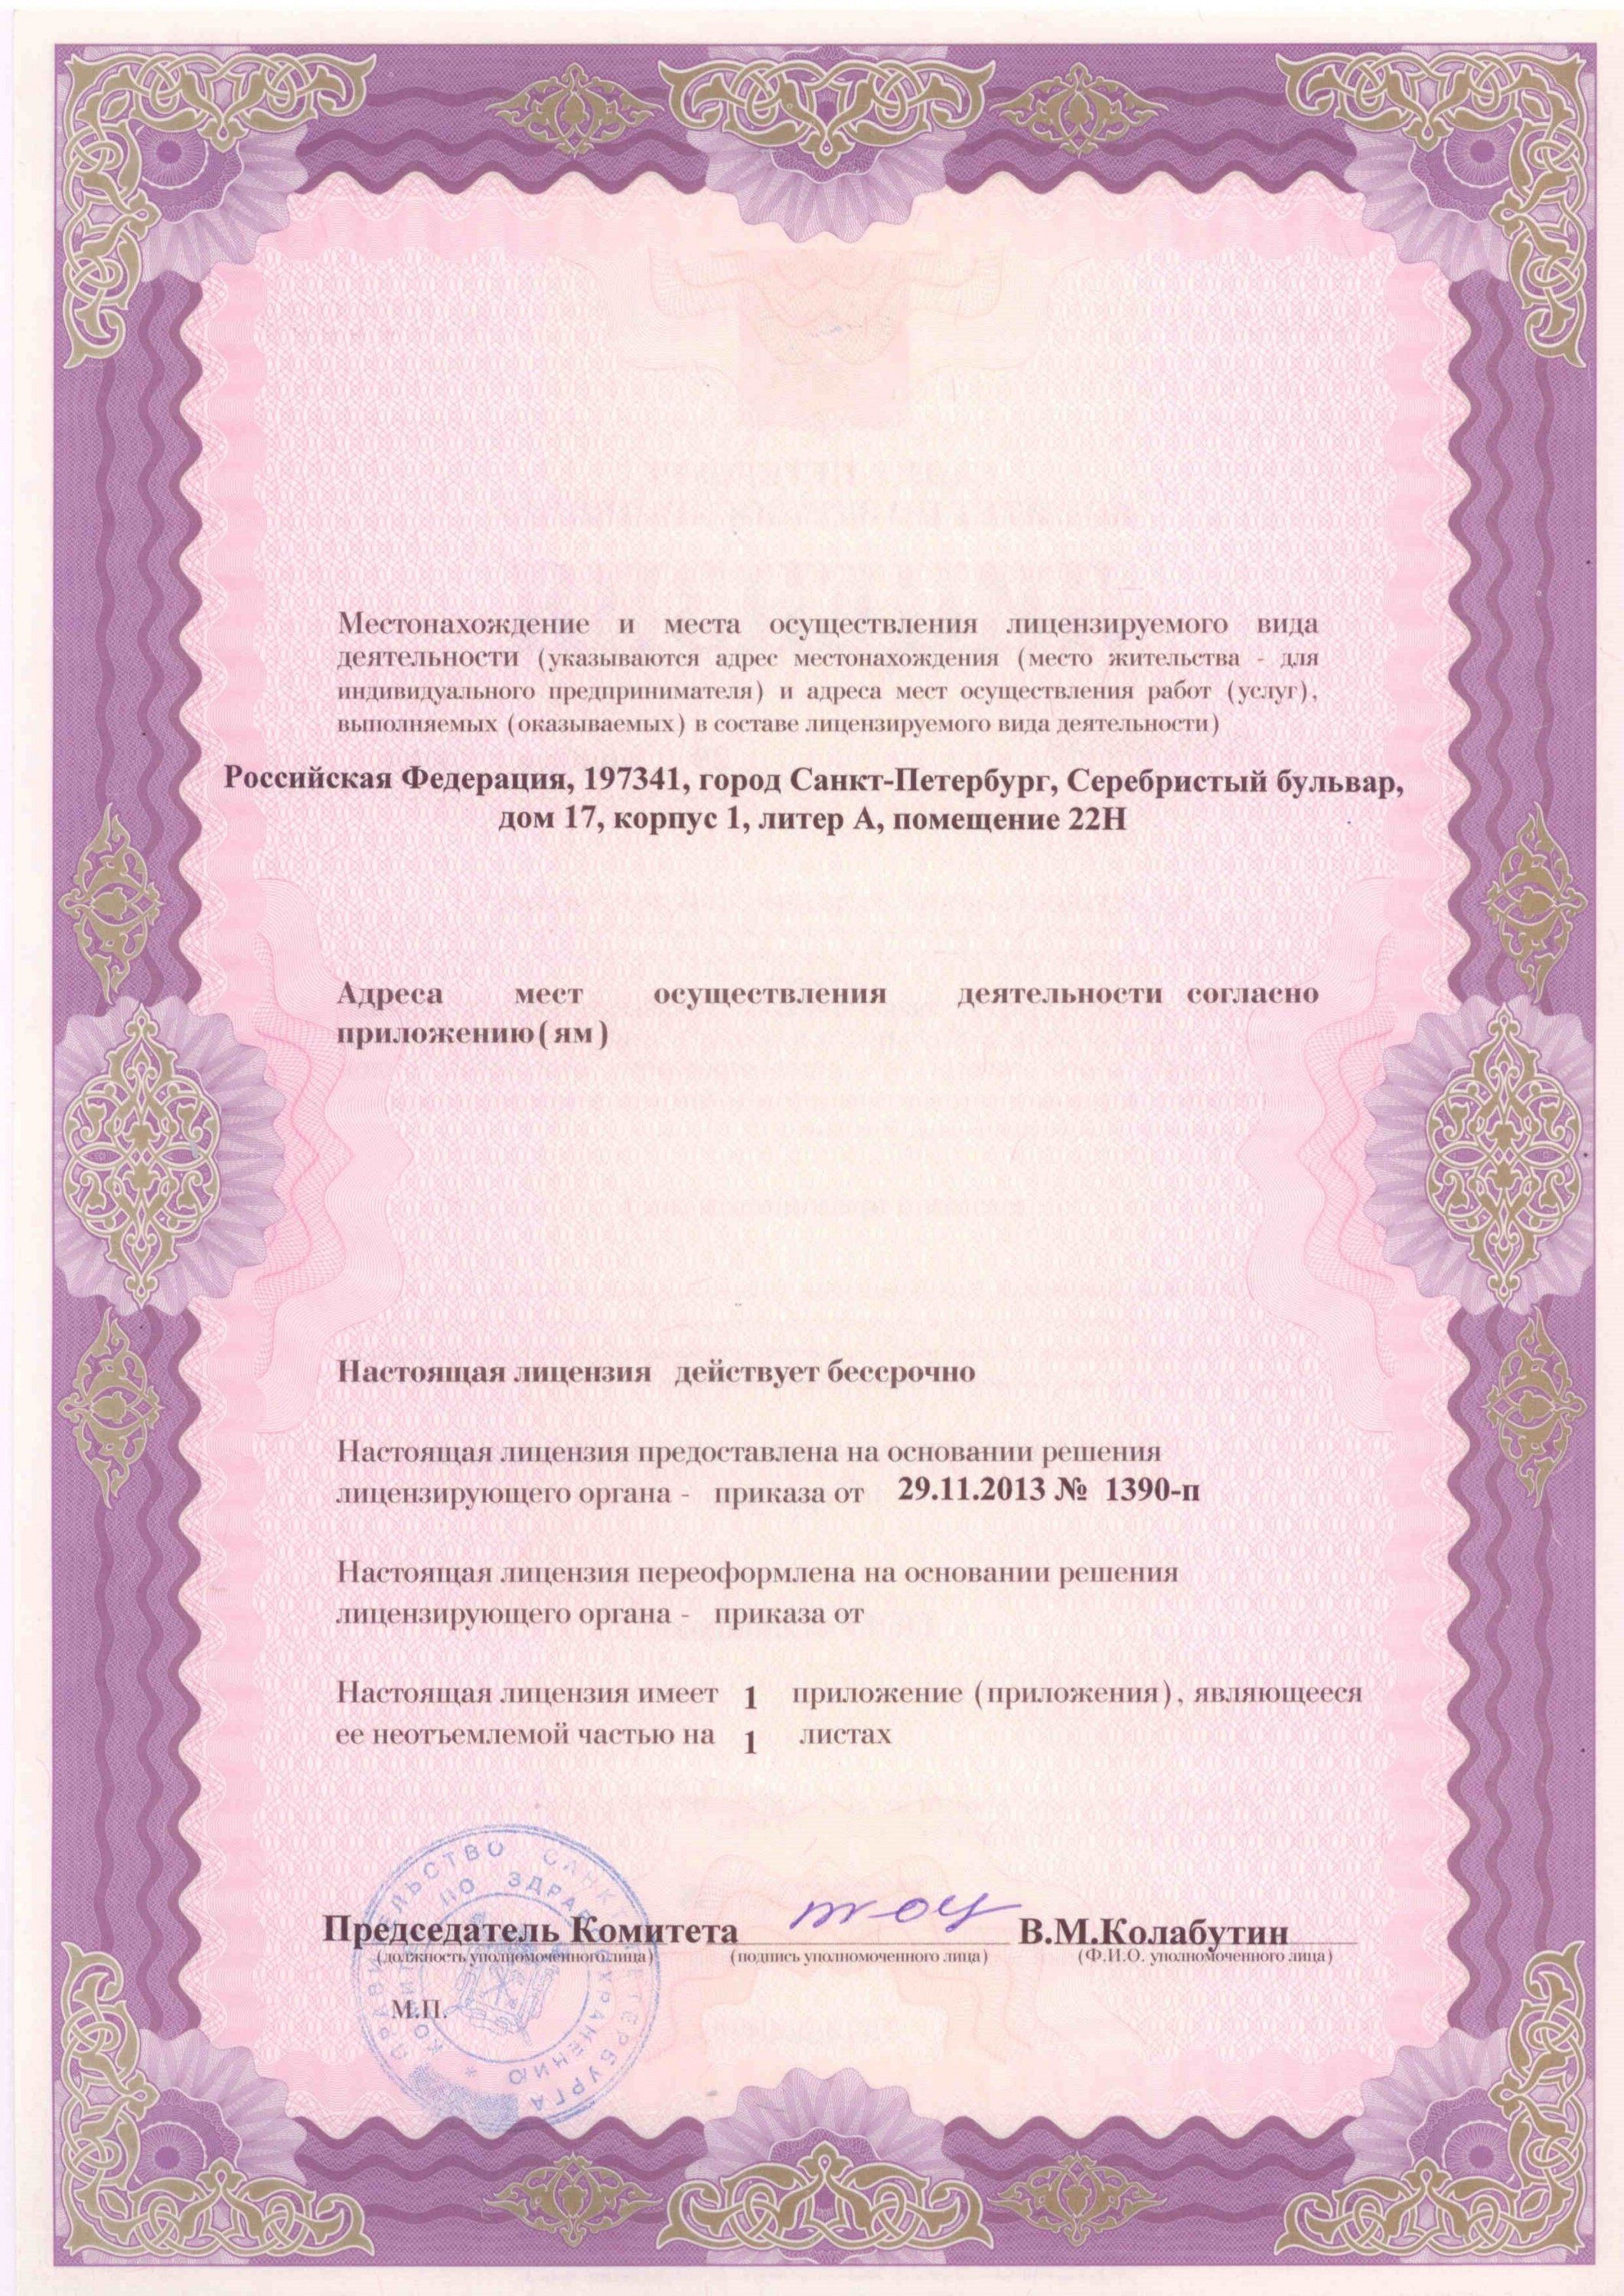 Серебро лицензия (2)_result.jpg